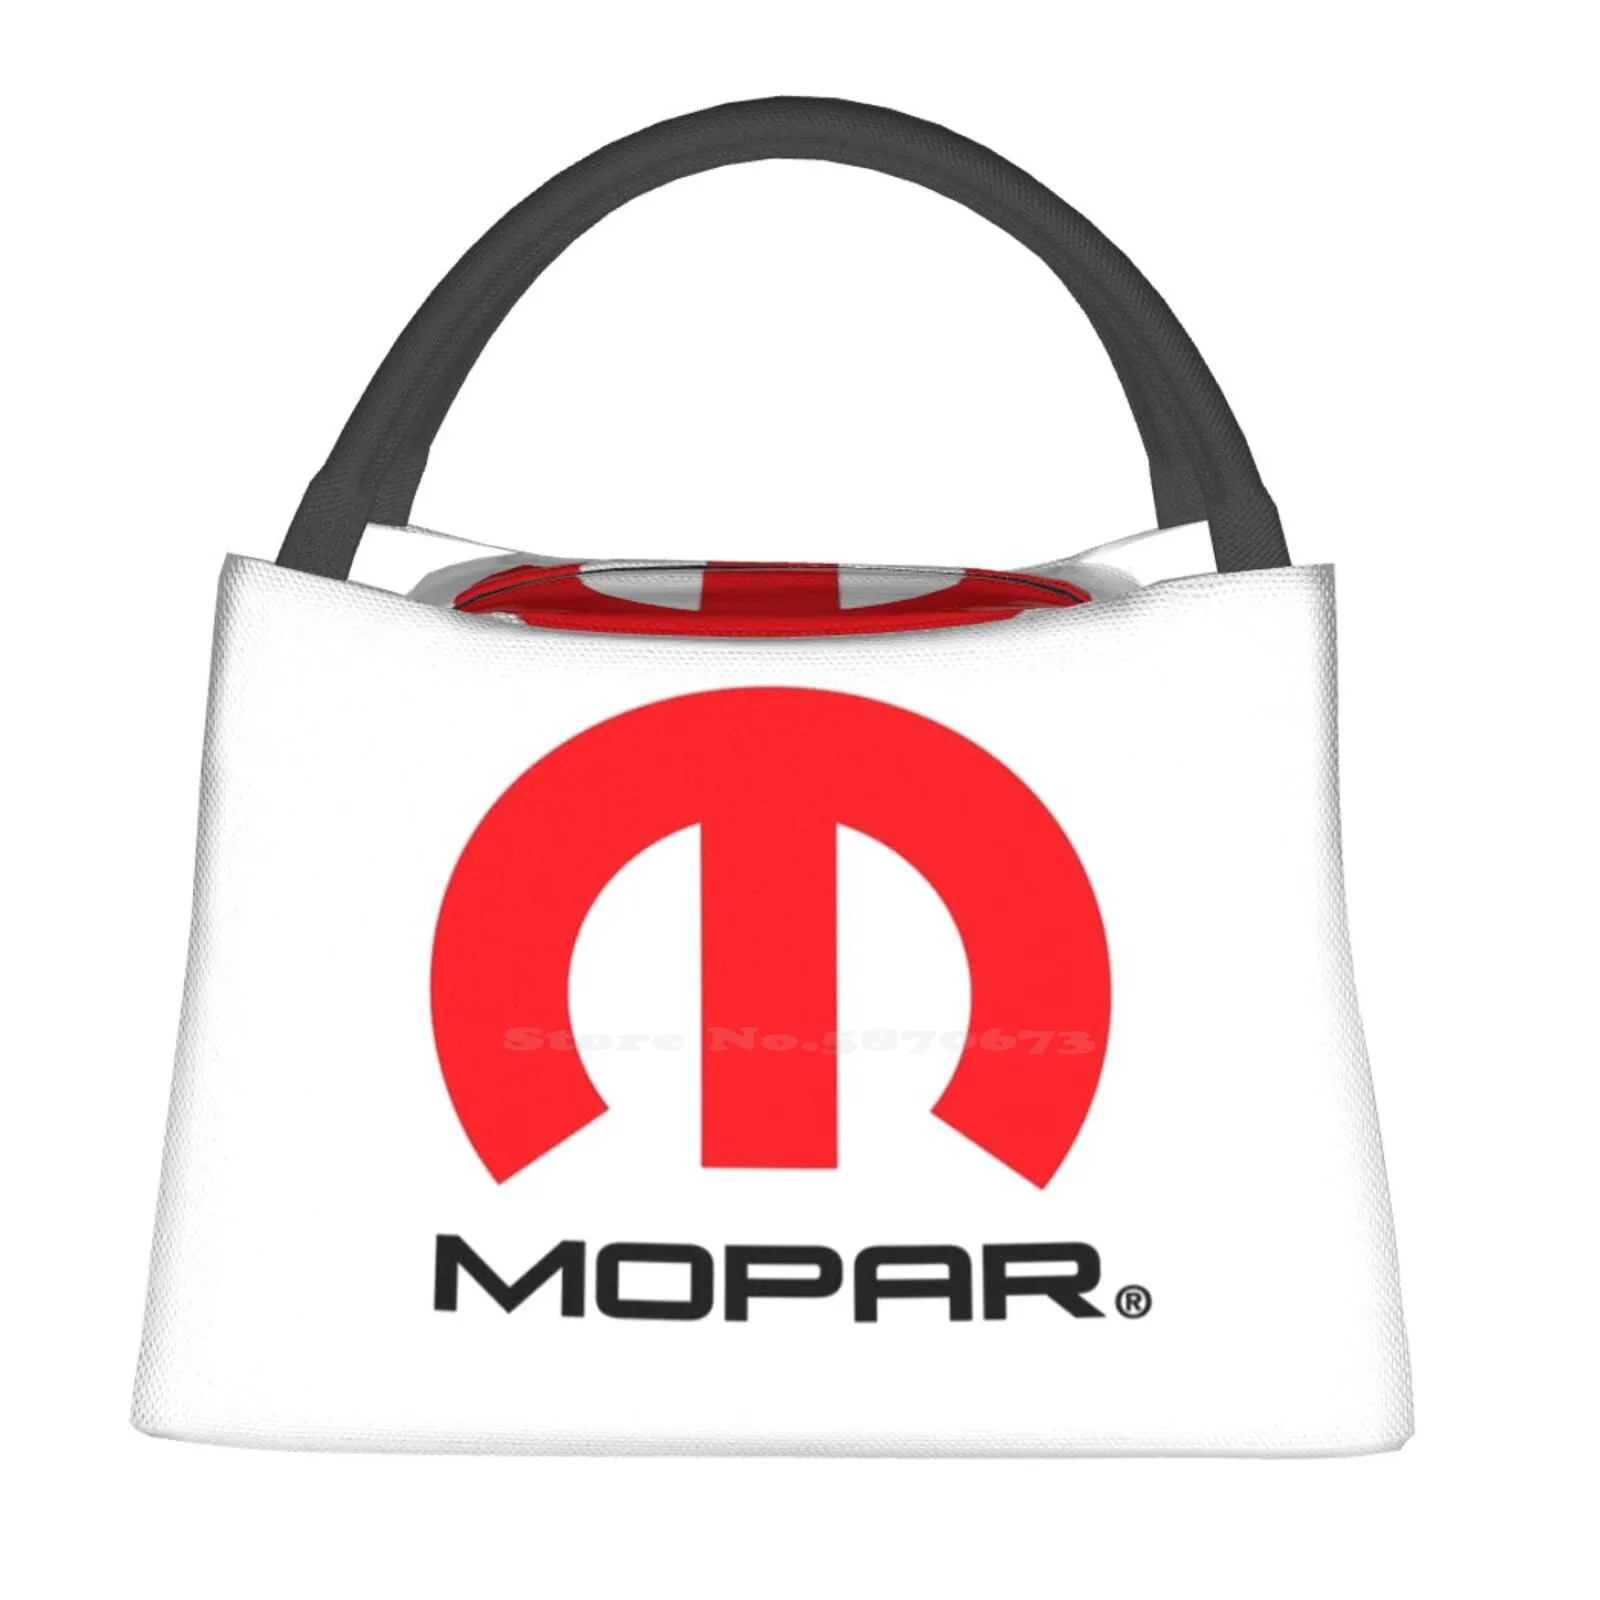 

Mopar изолированная сумка с логотипом красного и черного цвета для путешествий, обеда, пикника, ужина, школы, детали знаков фотографий Fiat Chrysler Muscle